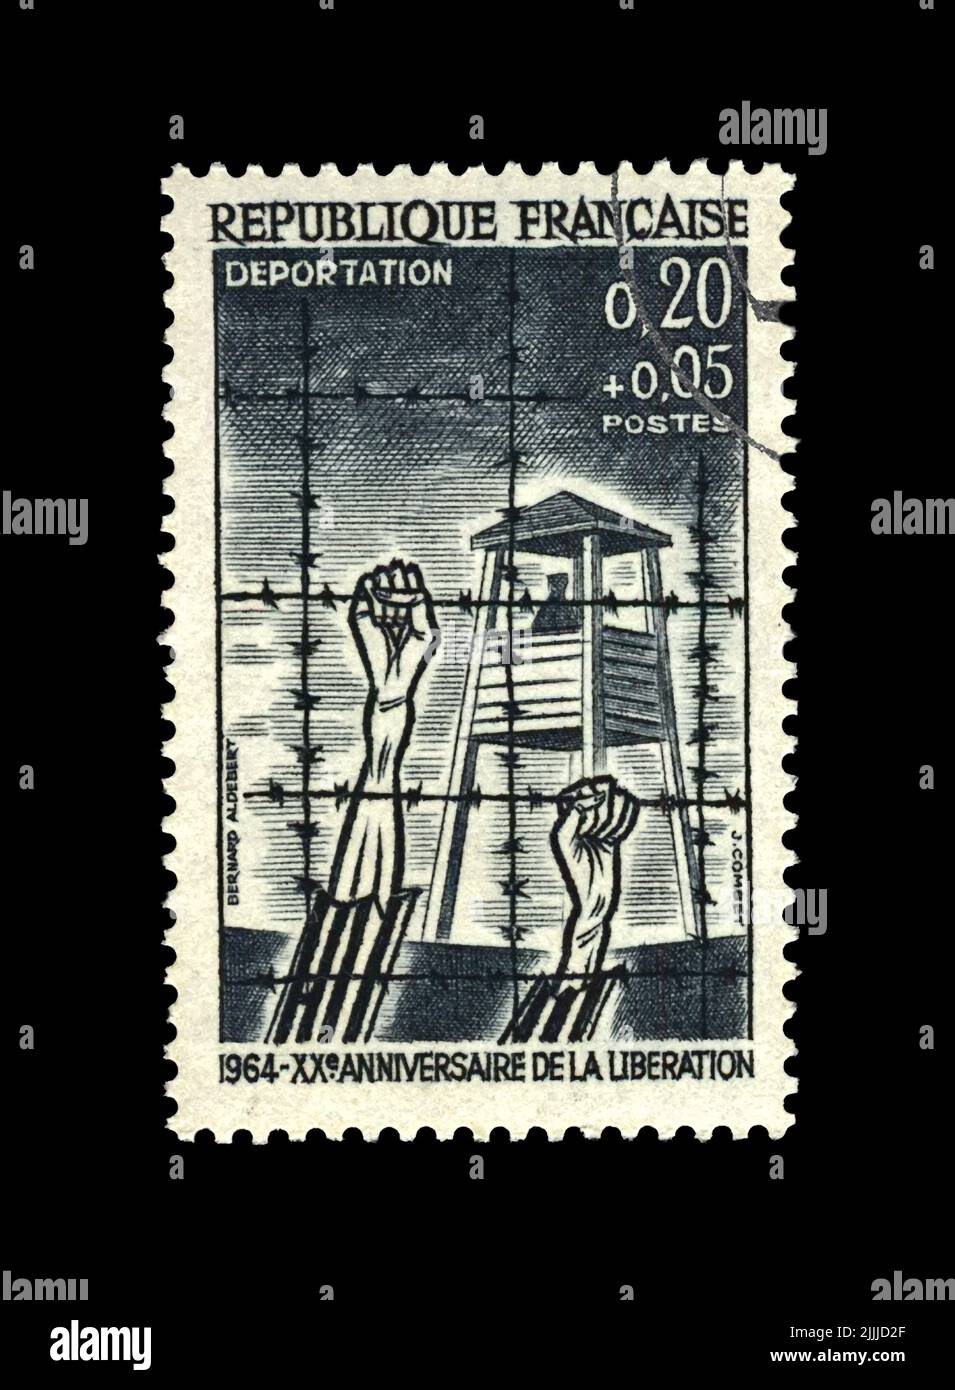 Libération du camp de concentration, victimes mains humaines sous câble barbelé, 20th anniversaire, VERS 1964. Timbre de poste d'époque imprimé en FRANCE. Banque D'Images